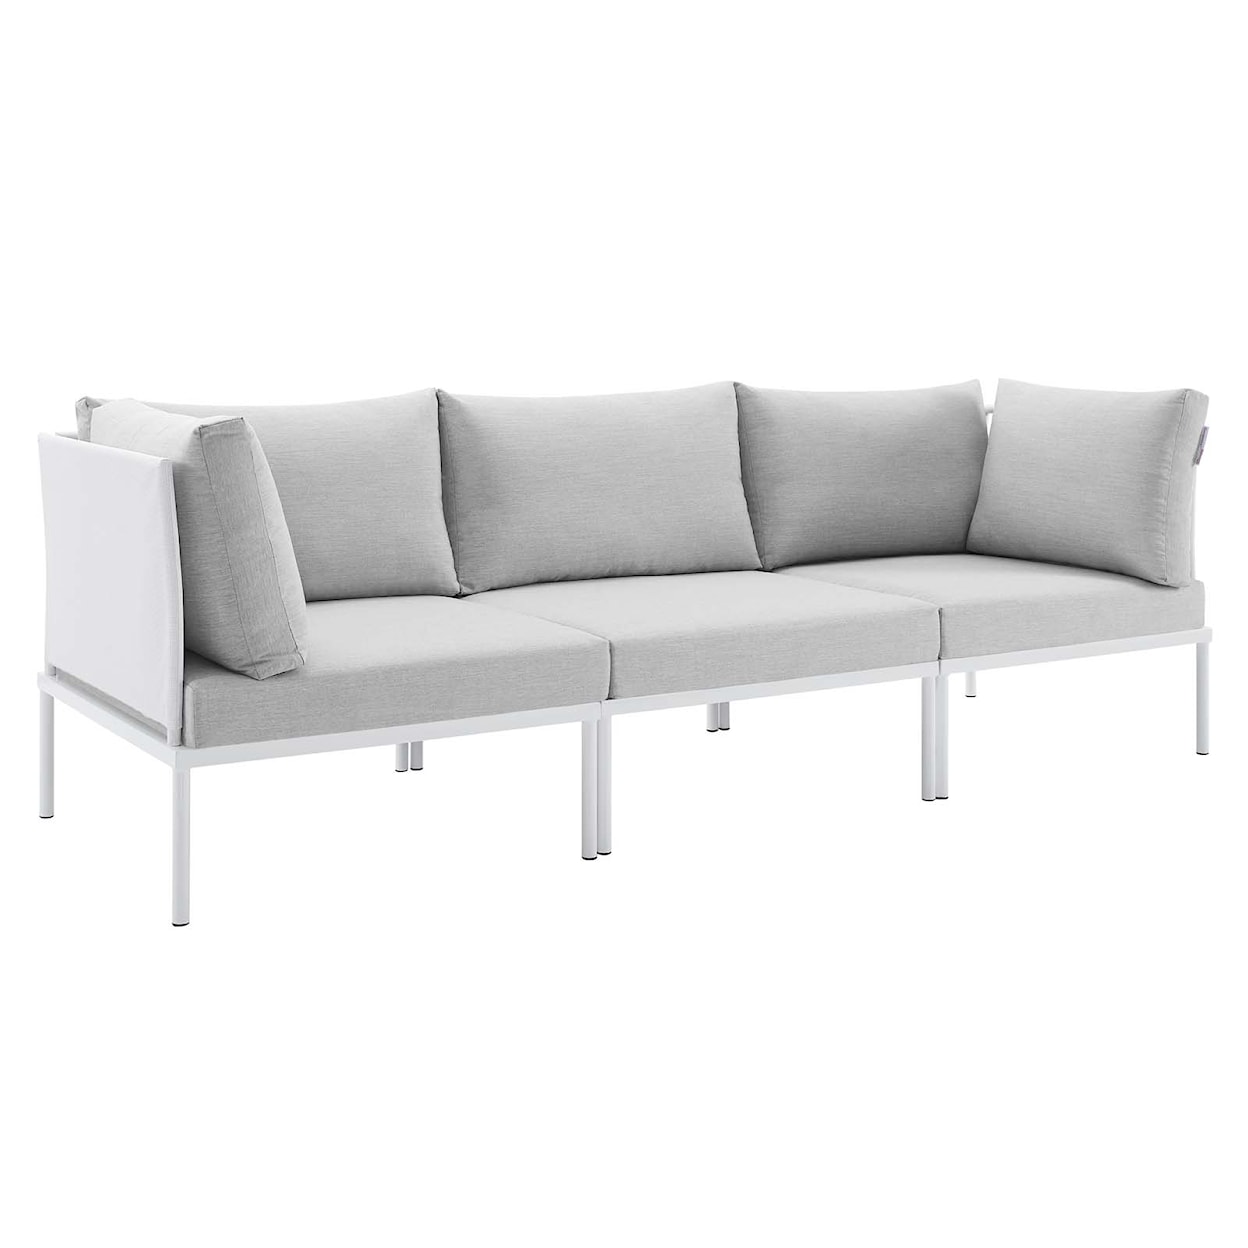 Modway Harmony Outdoor Aluminum Sofa